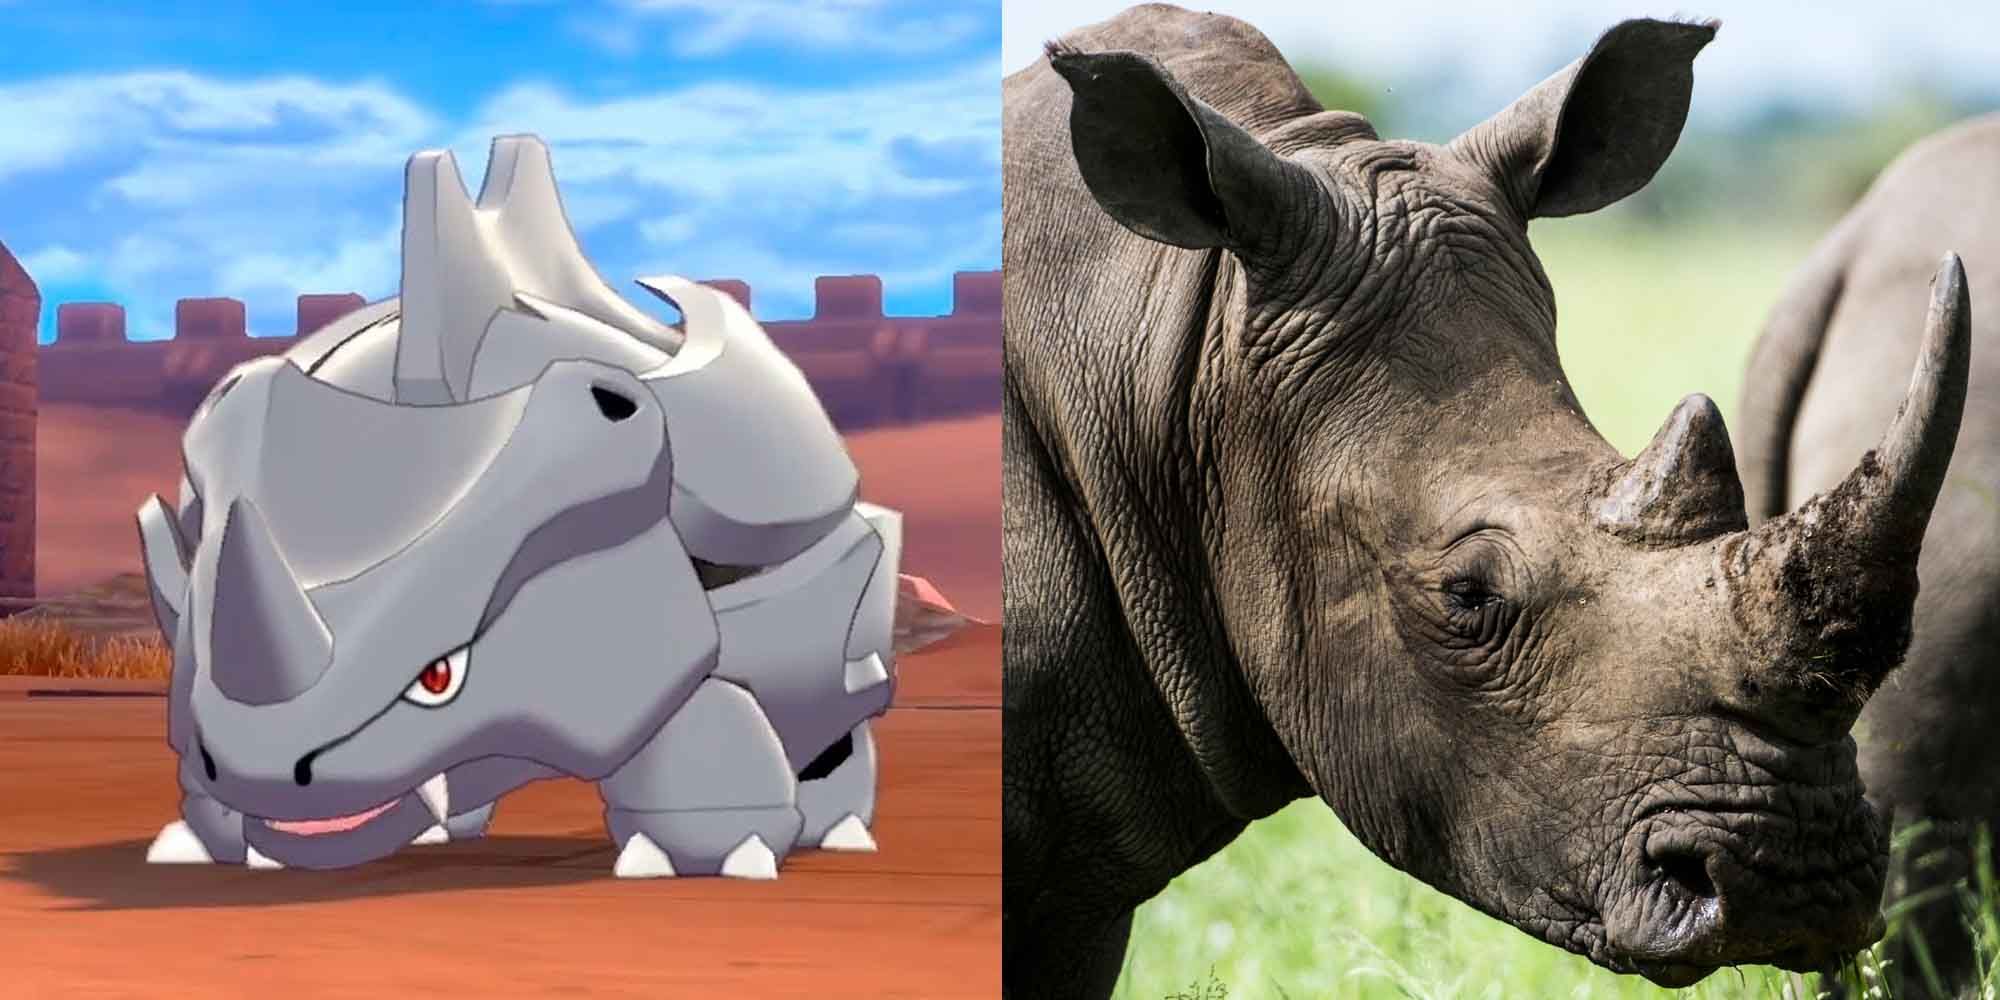 Rhyhorn Pokemon and a rhino